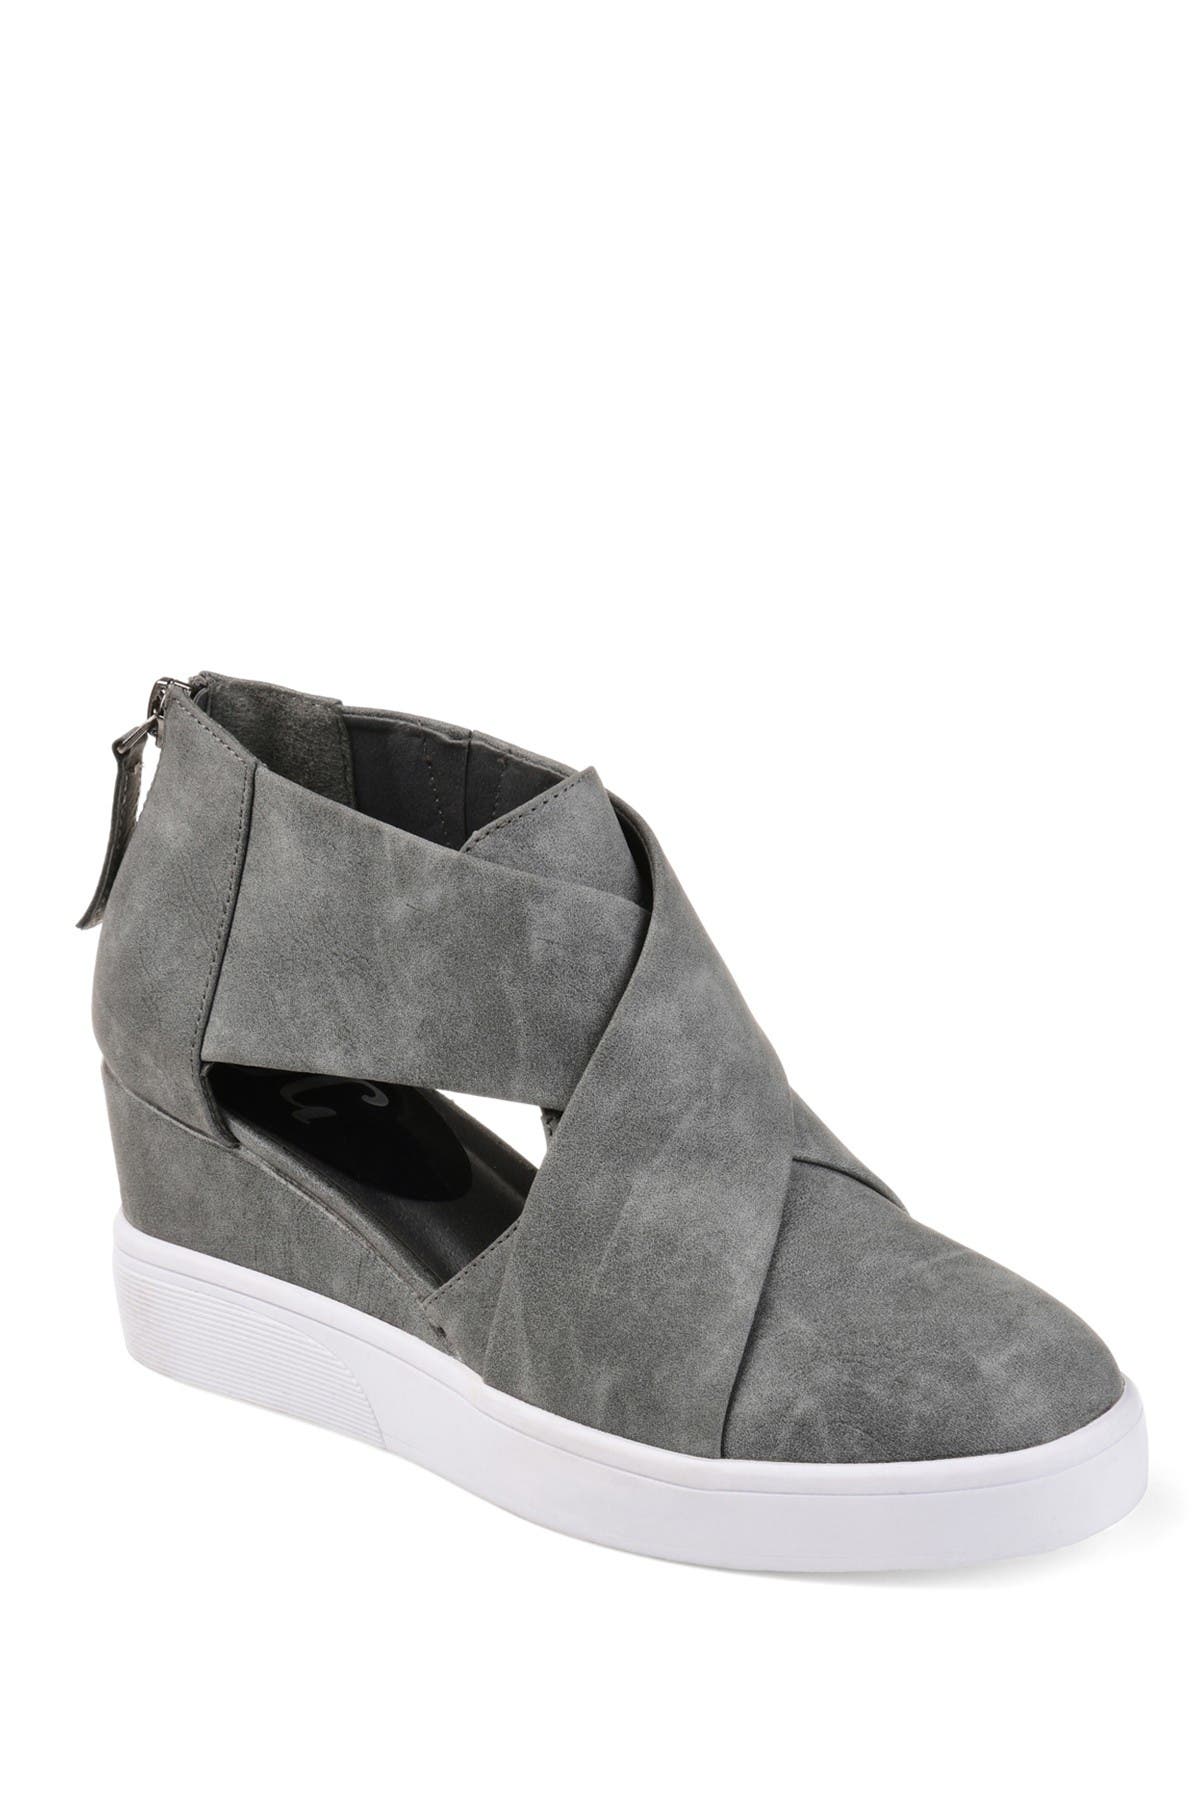 journee collection clara wedge sneaker grey